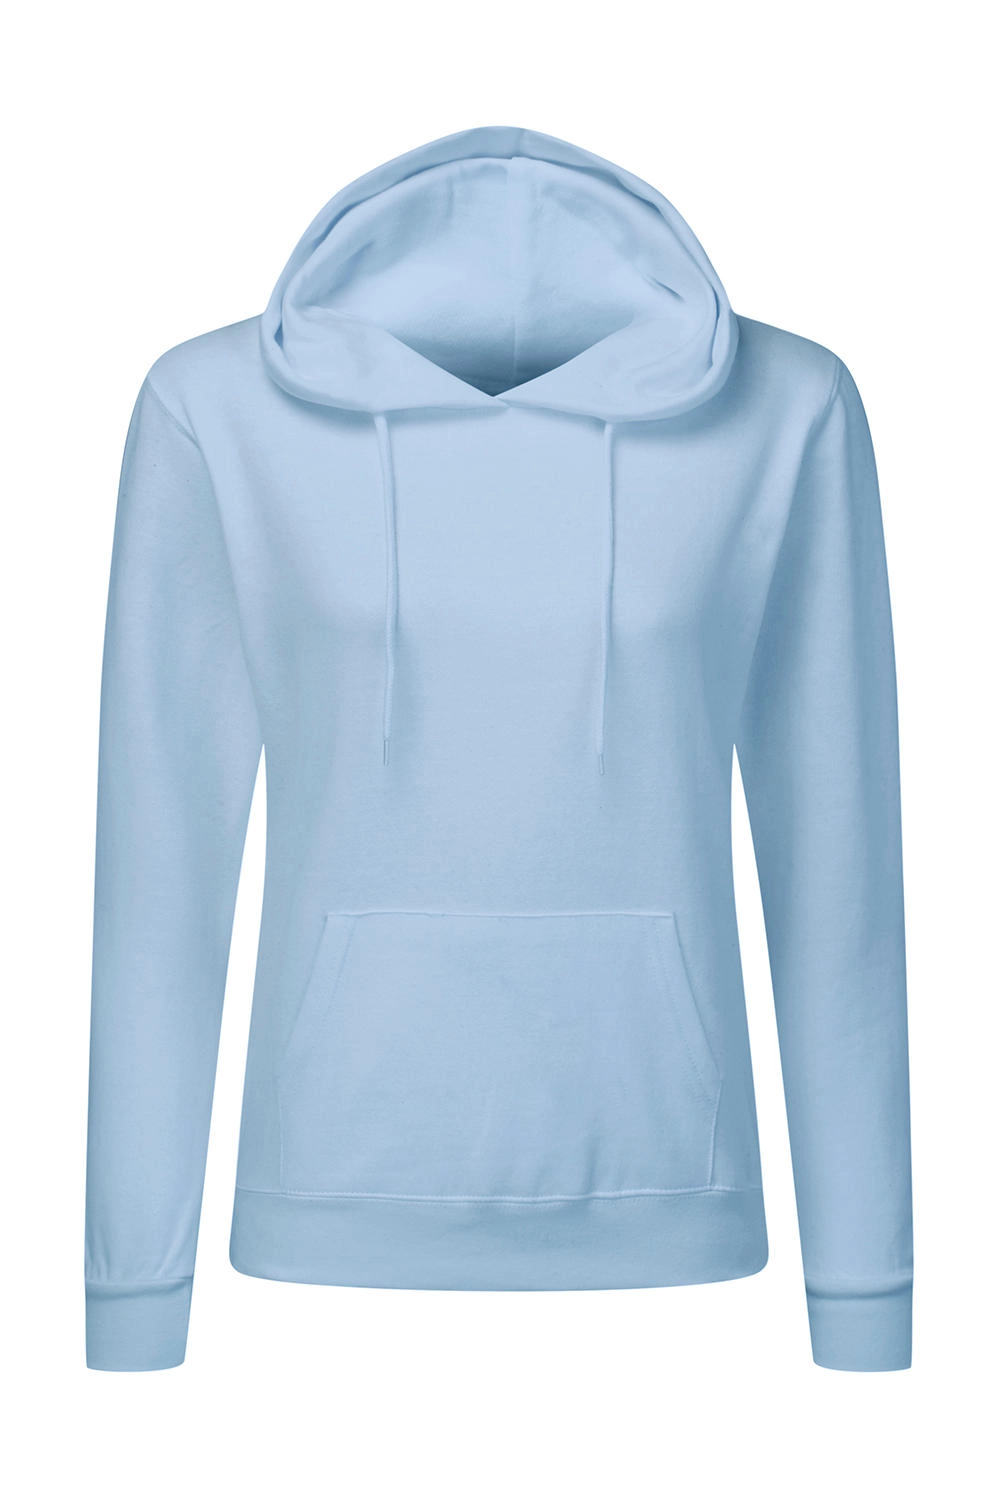 Hooded Sweatshirt Women zum Besticken und Bedrucken in der Farbe Sky mit Ihren Logo, Schriftzug oder Motiv.